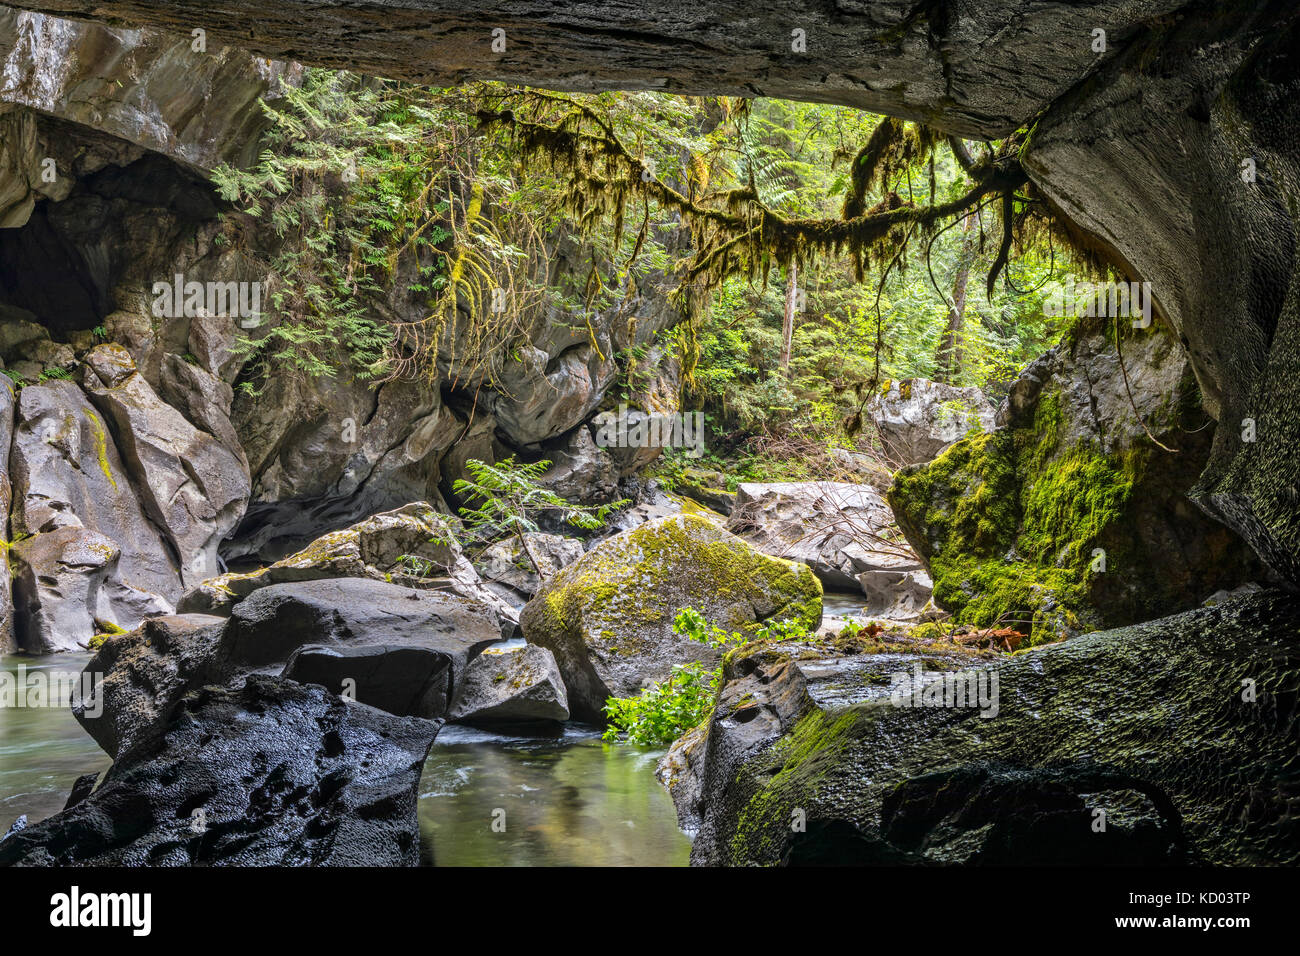 Atluck Creek durch die Besetzung Kalkstein erstellen Huson natürliche Brücke Höhle in wenig huson Höhle Regional Park schneiden, nördlichen Vancouver Island, British Columbia, Kanada Stockfoto